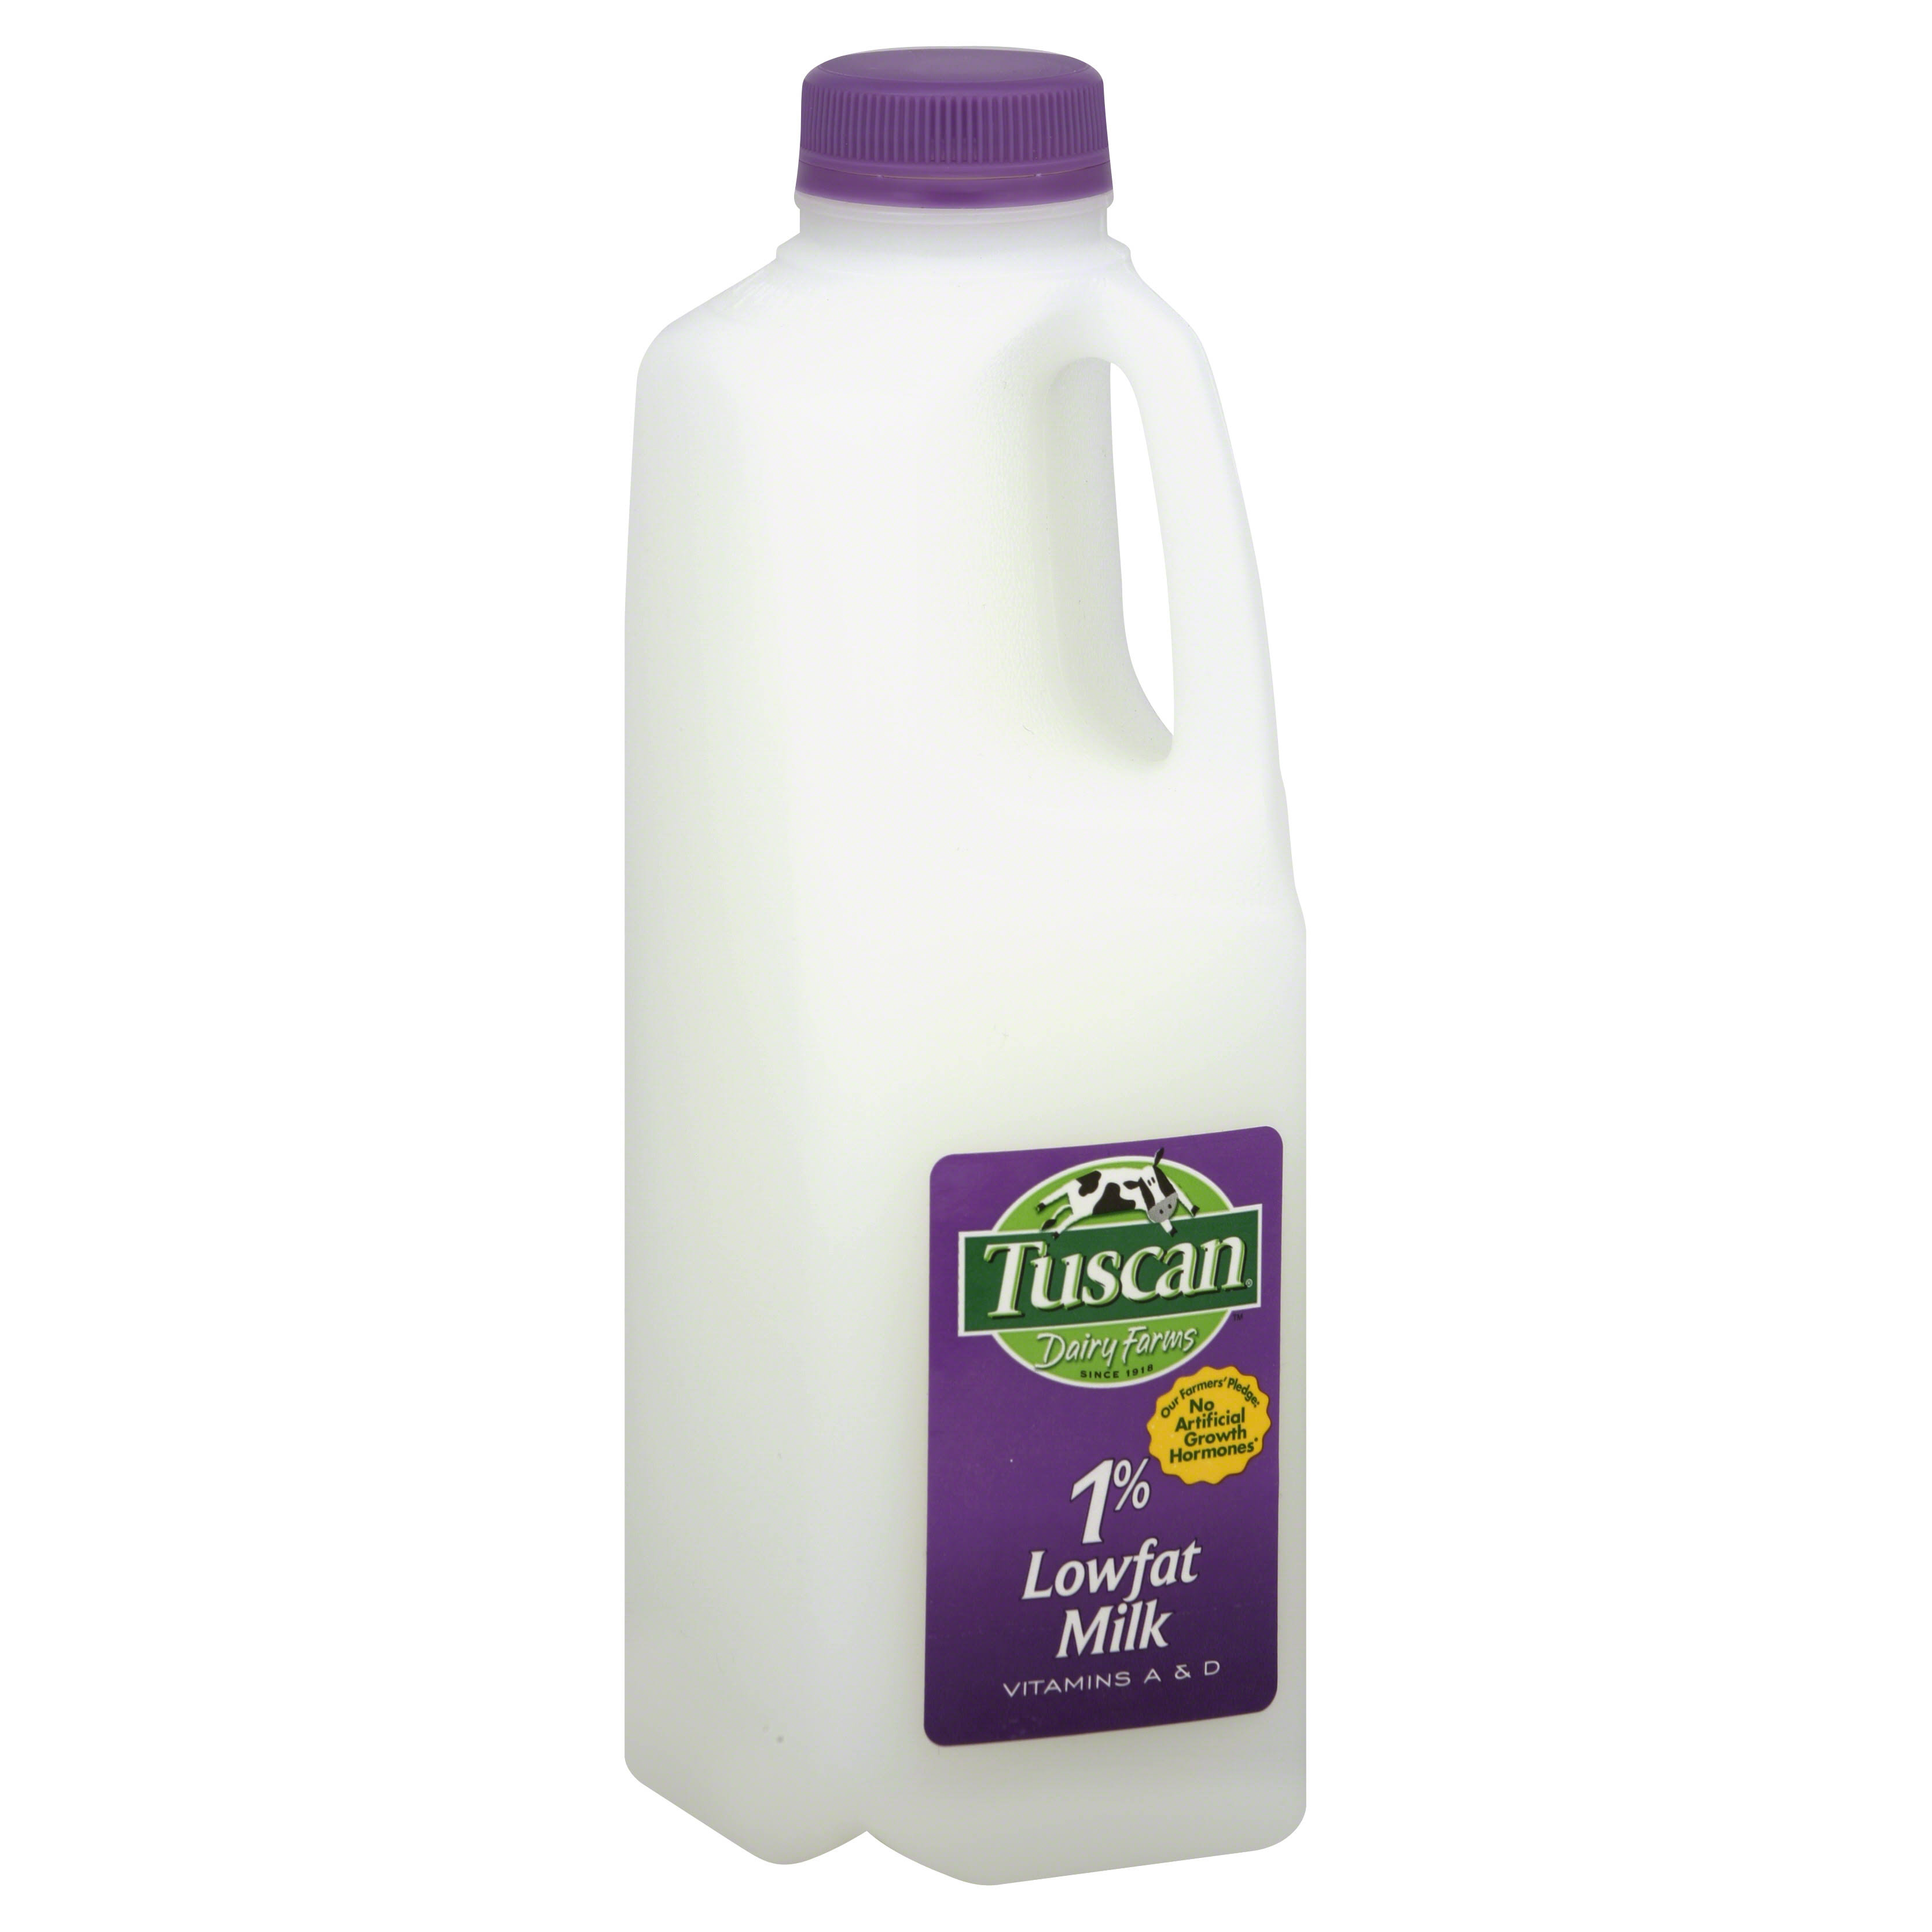 Tuscan Milk, Lowfat, 1% Milkfat - 1 qt